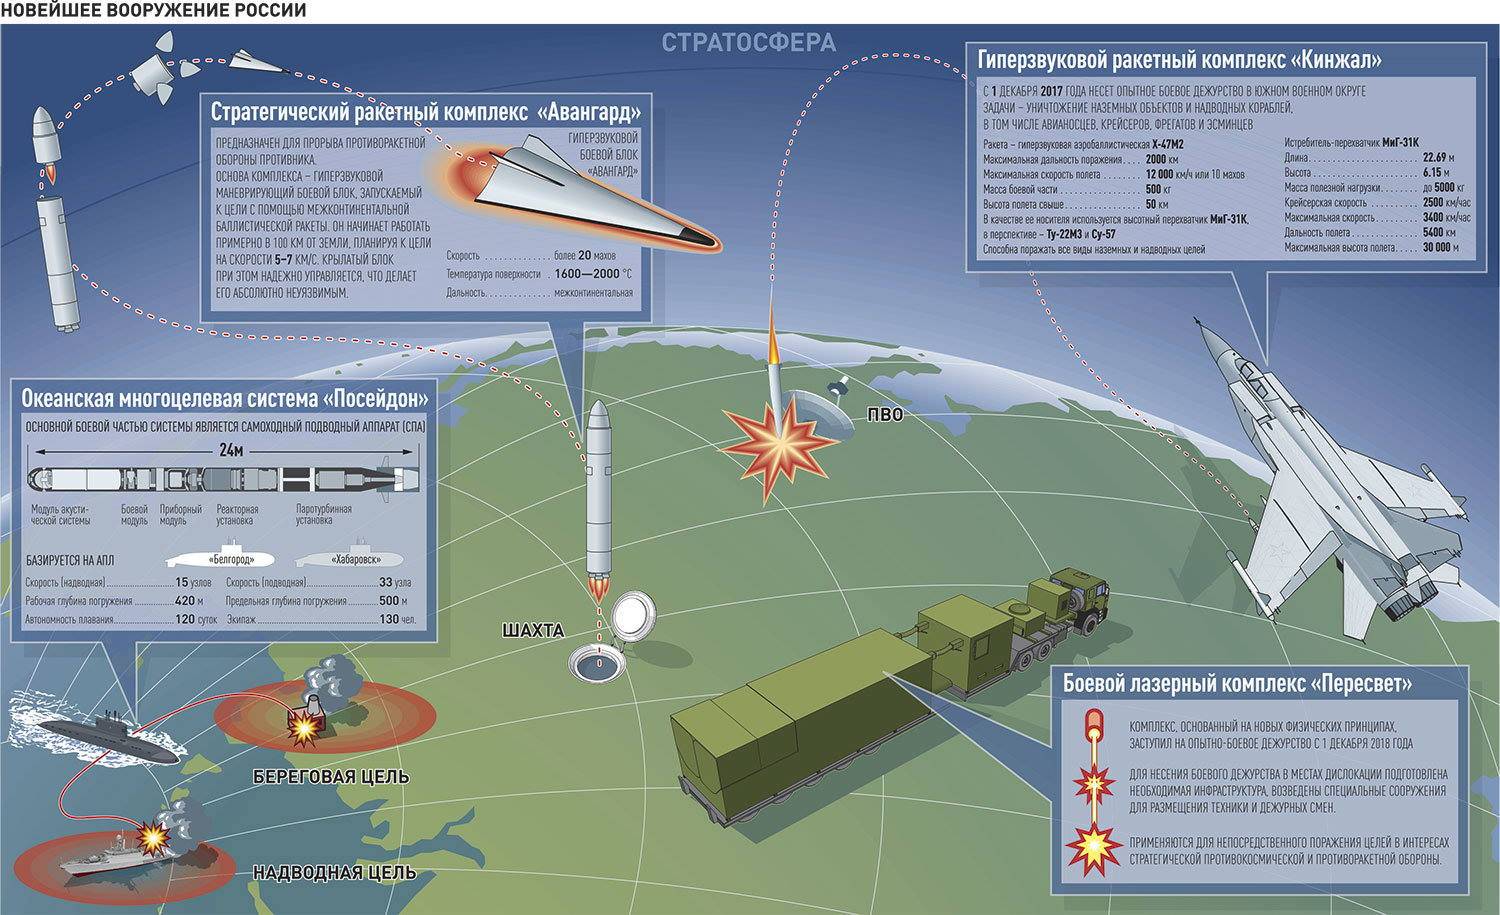 Войска противовоздушной и противоракетной обороны россии